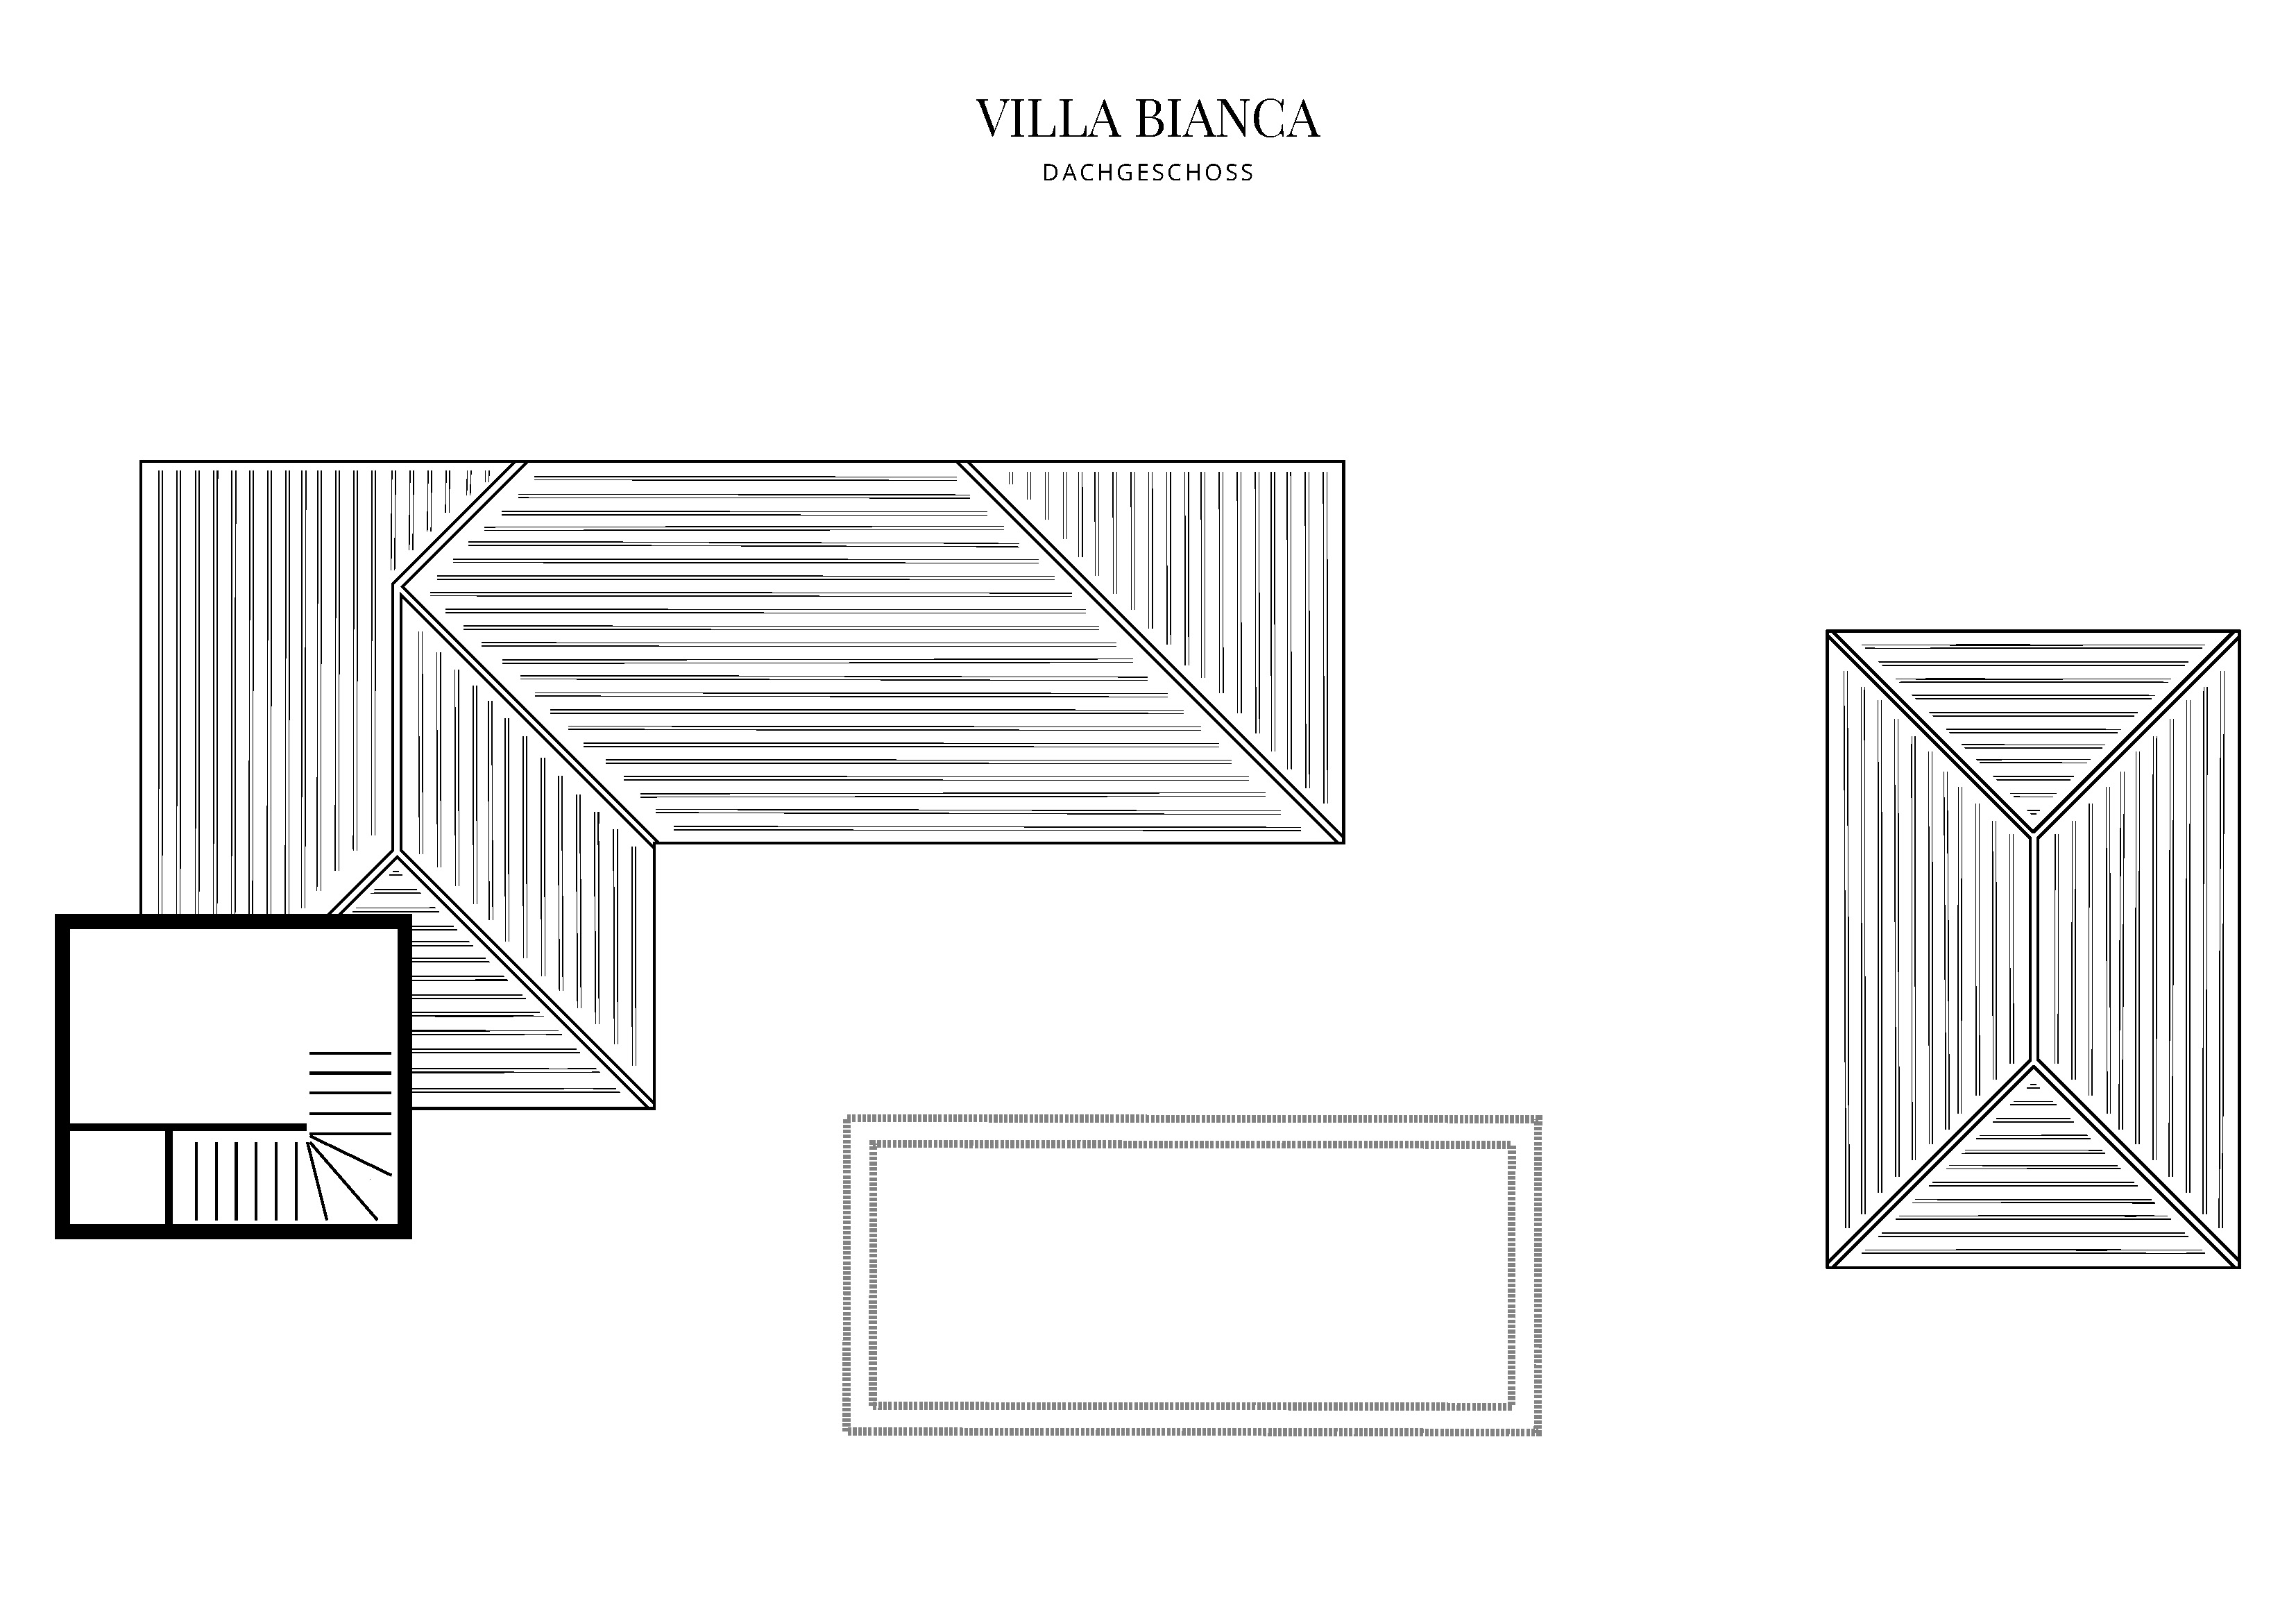 Grafik Grundriss Dachgeschoss Villa Bianca